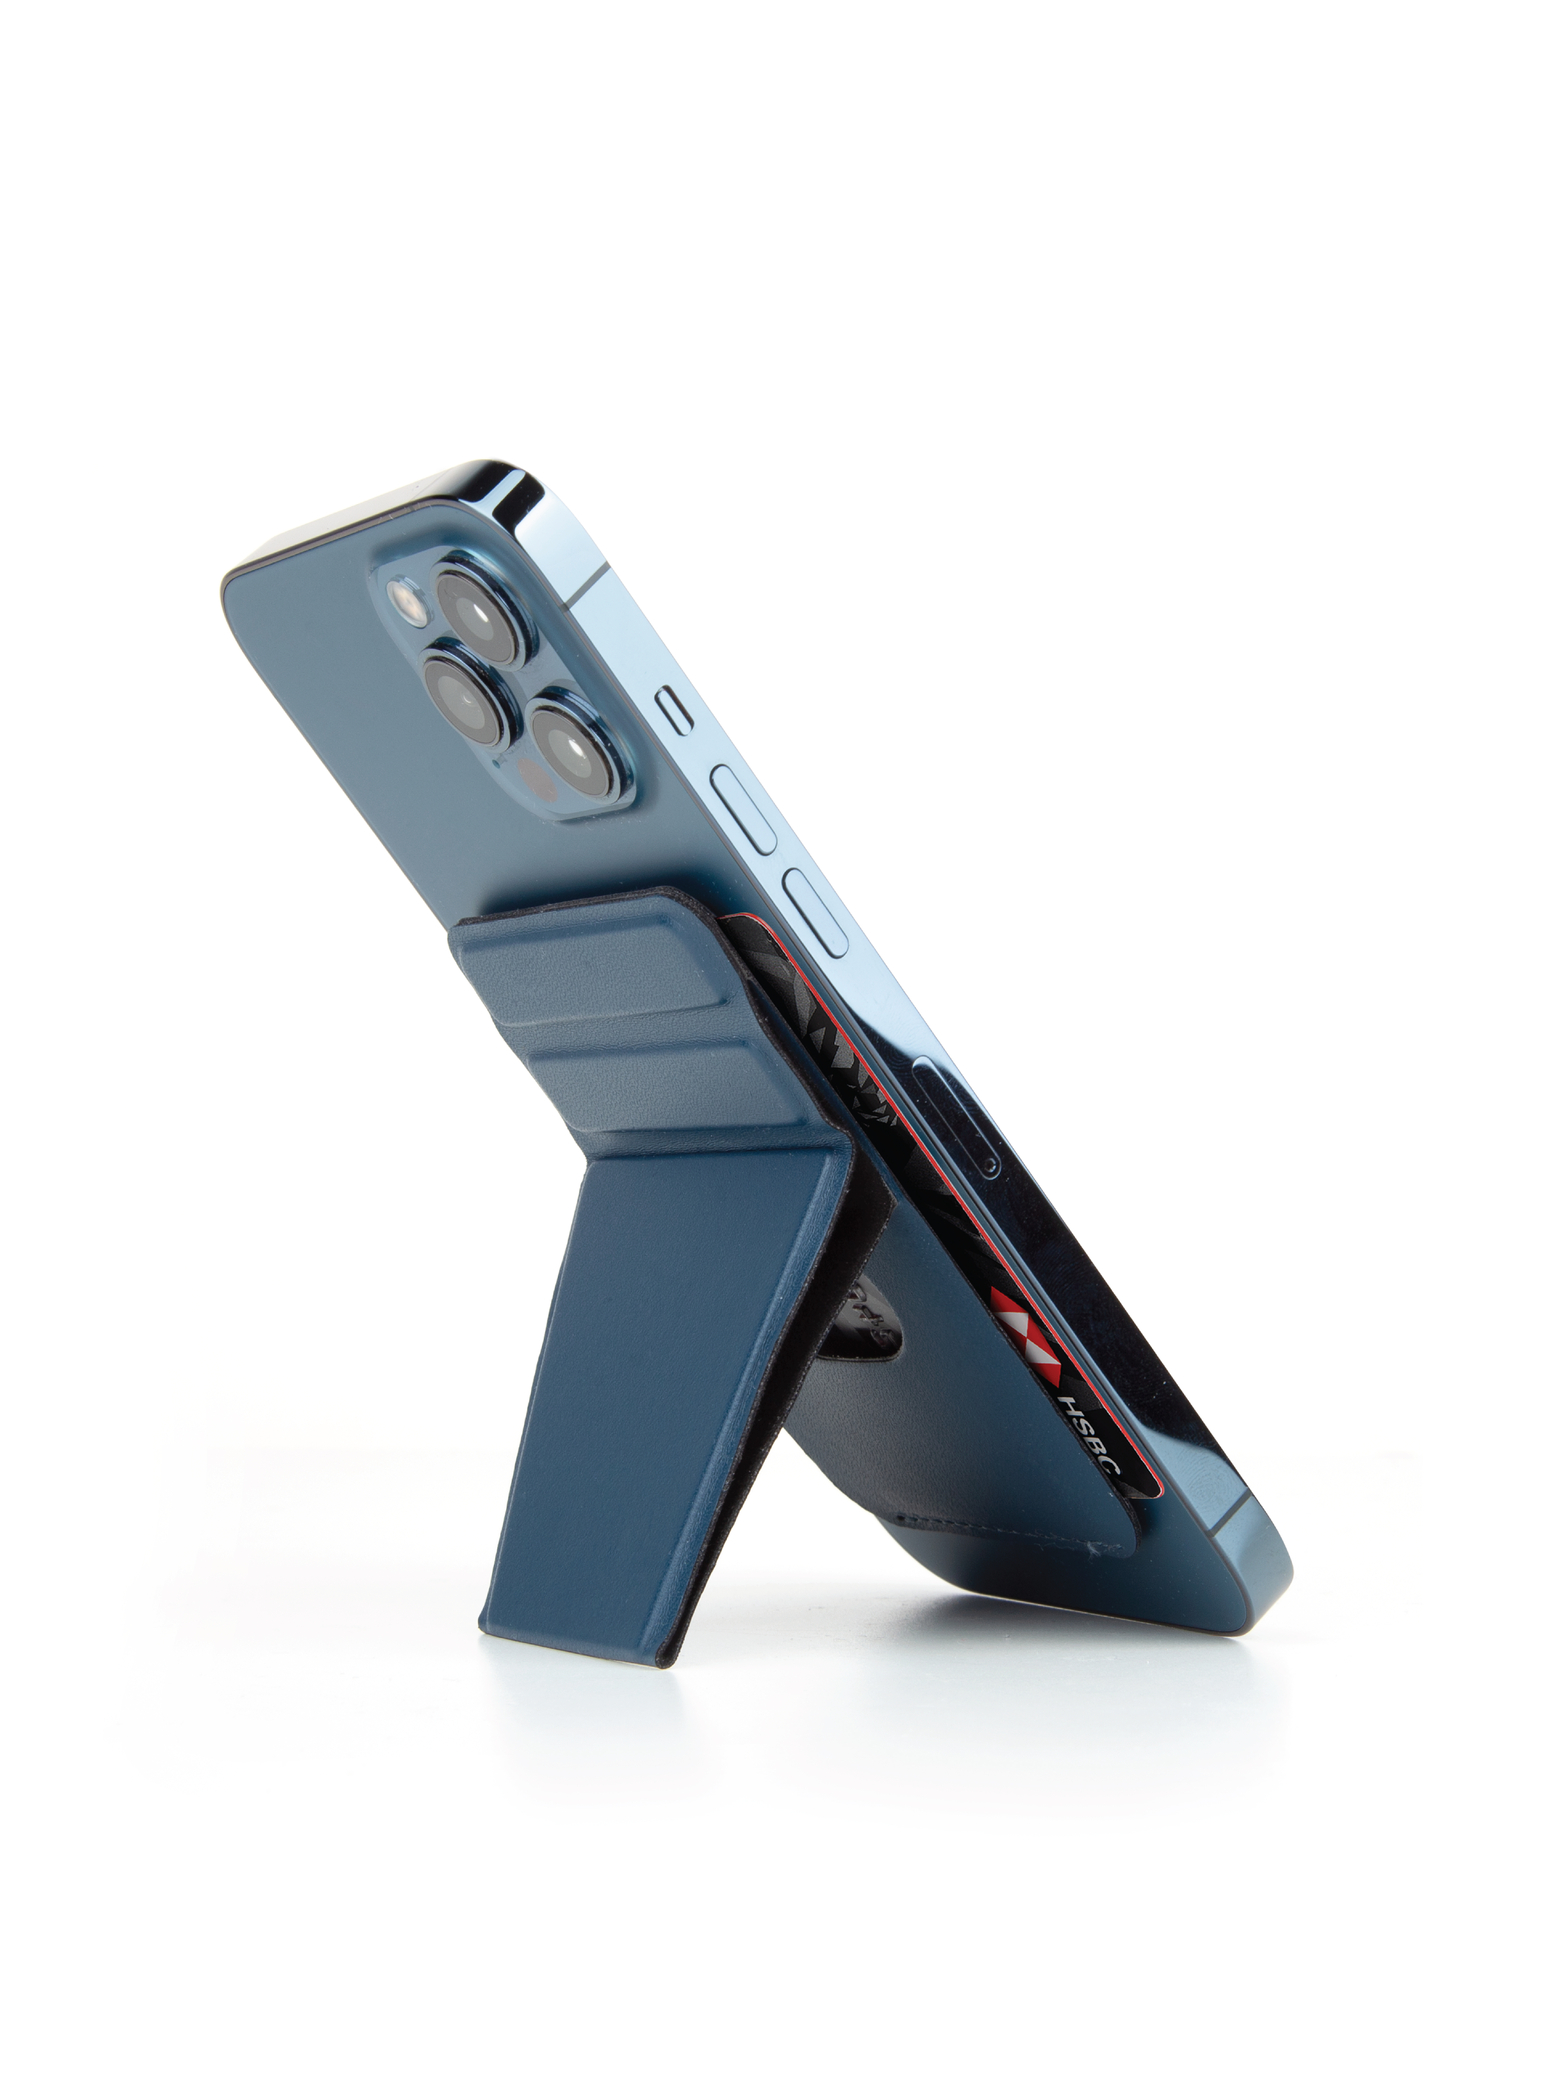 Ví Hỗ Trợ Sạc Từ Tính Kiêm Giá Đỡ Dành Cho iPhone 13 / iPhone 12 Series UNIQ LYFT Magnetic Snap-On Stand- Hàng Chính Hãng